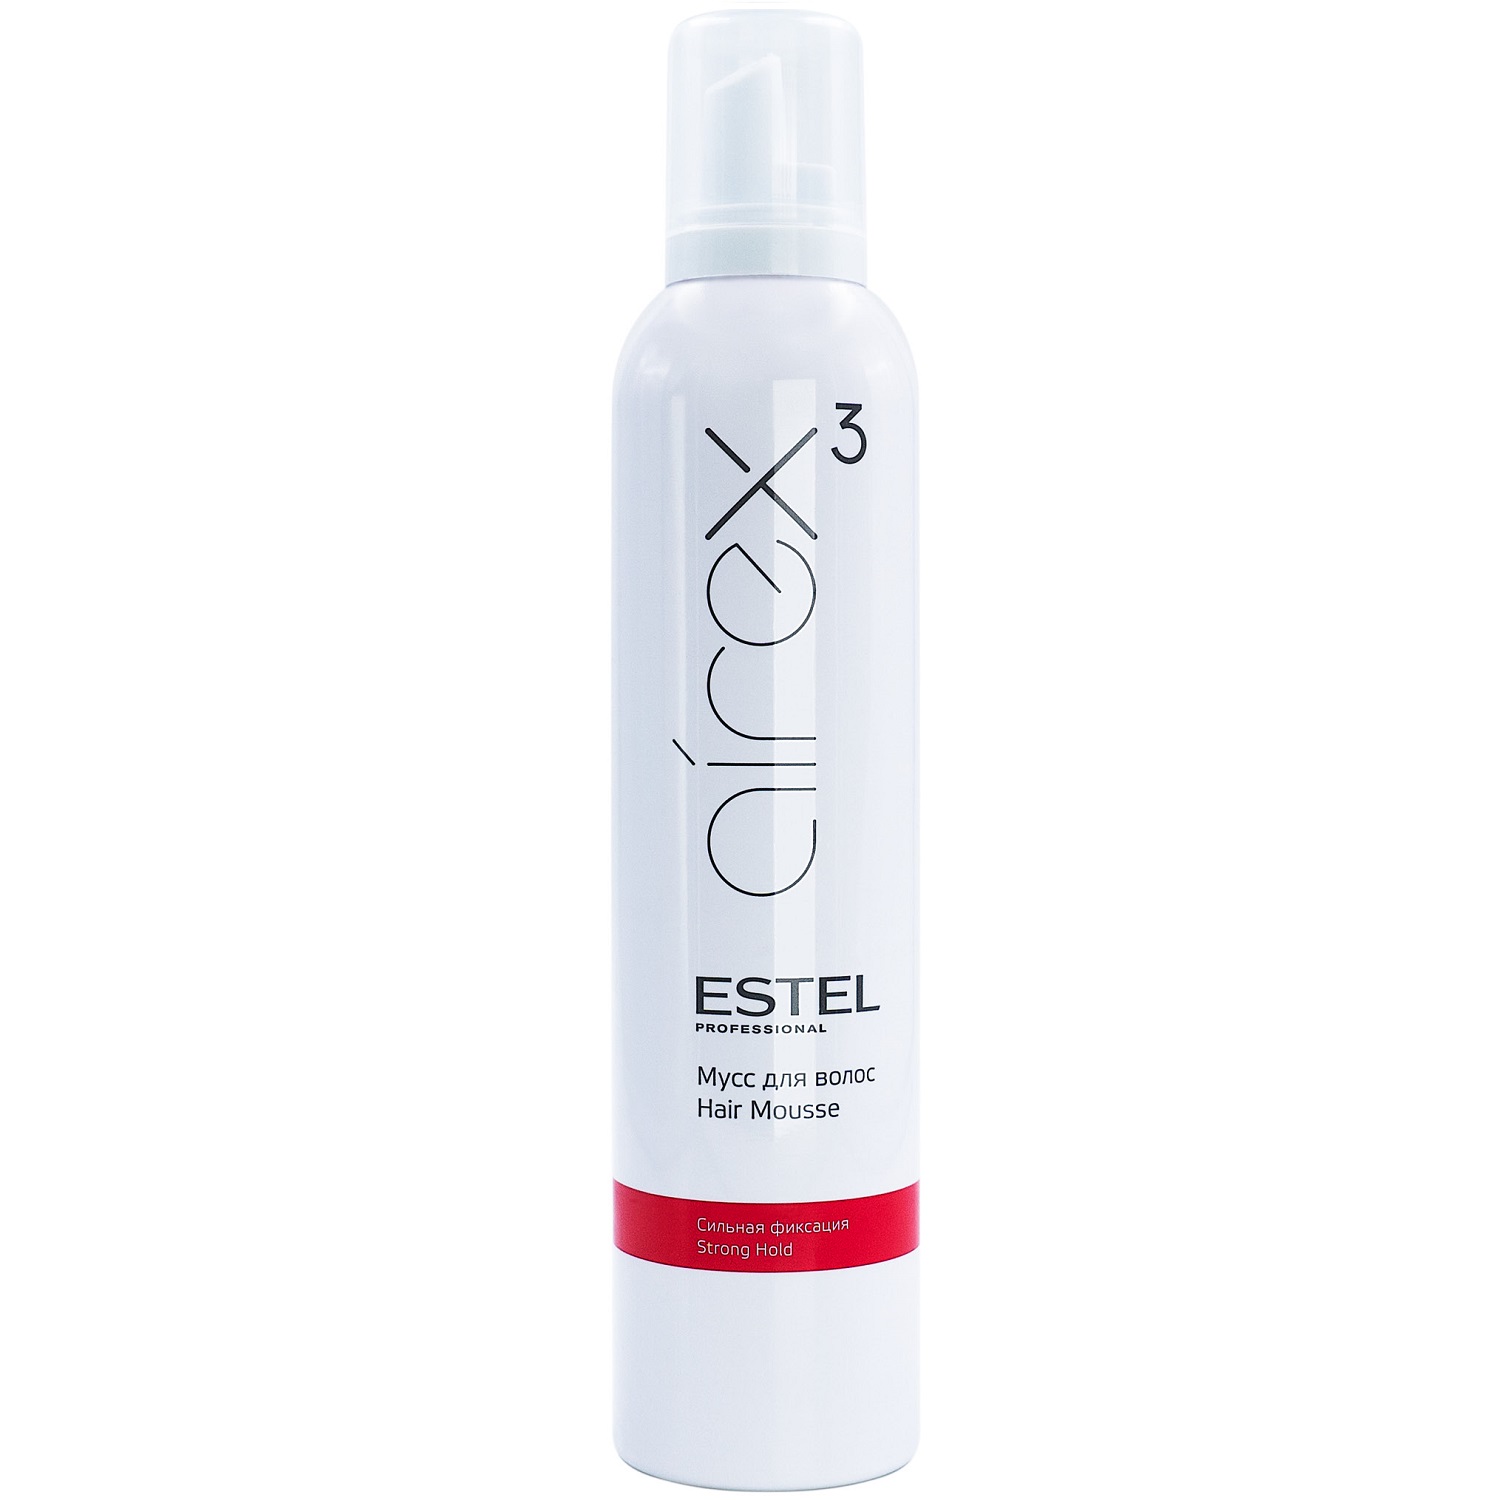 Estel Мусс для волос сильная фиксация, 300 мл (Estel, Airex) цена и фото